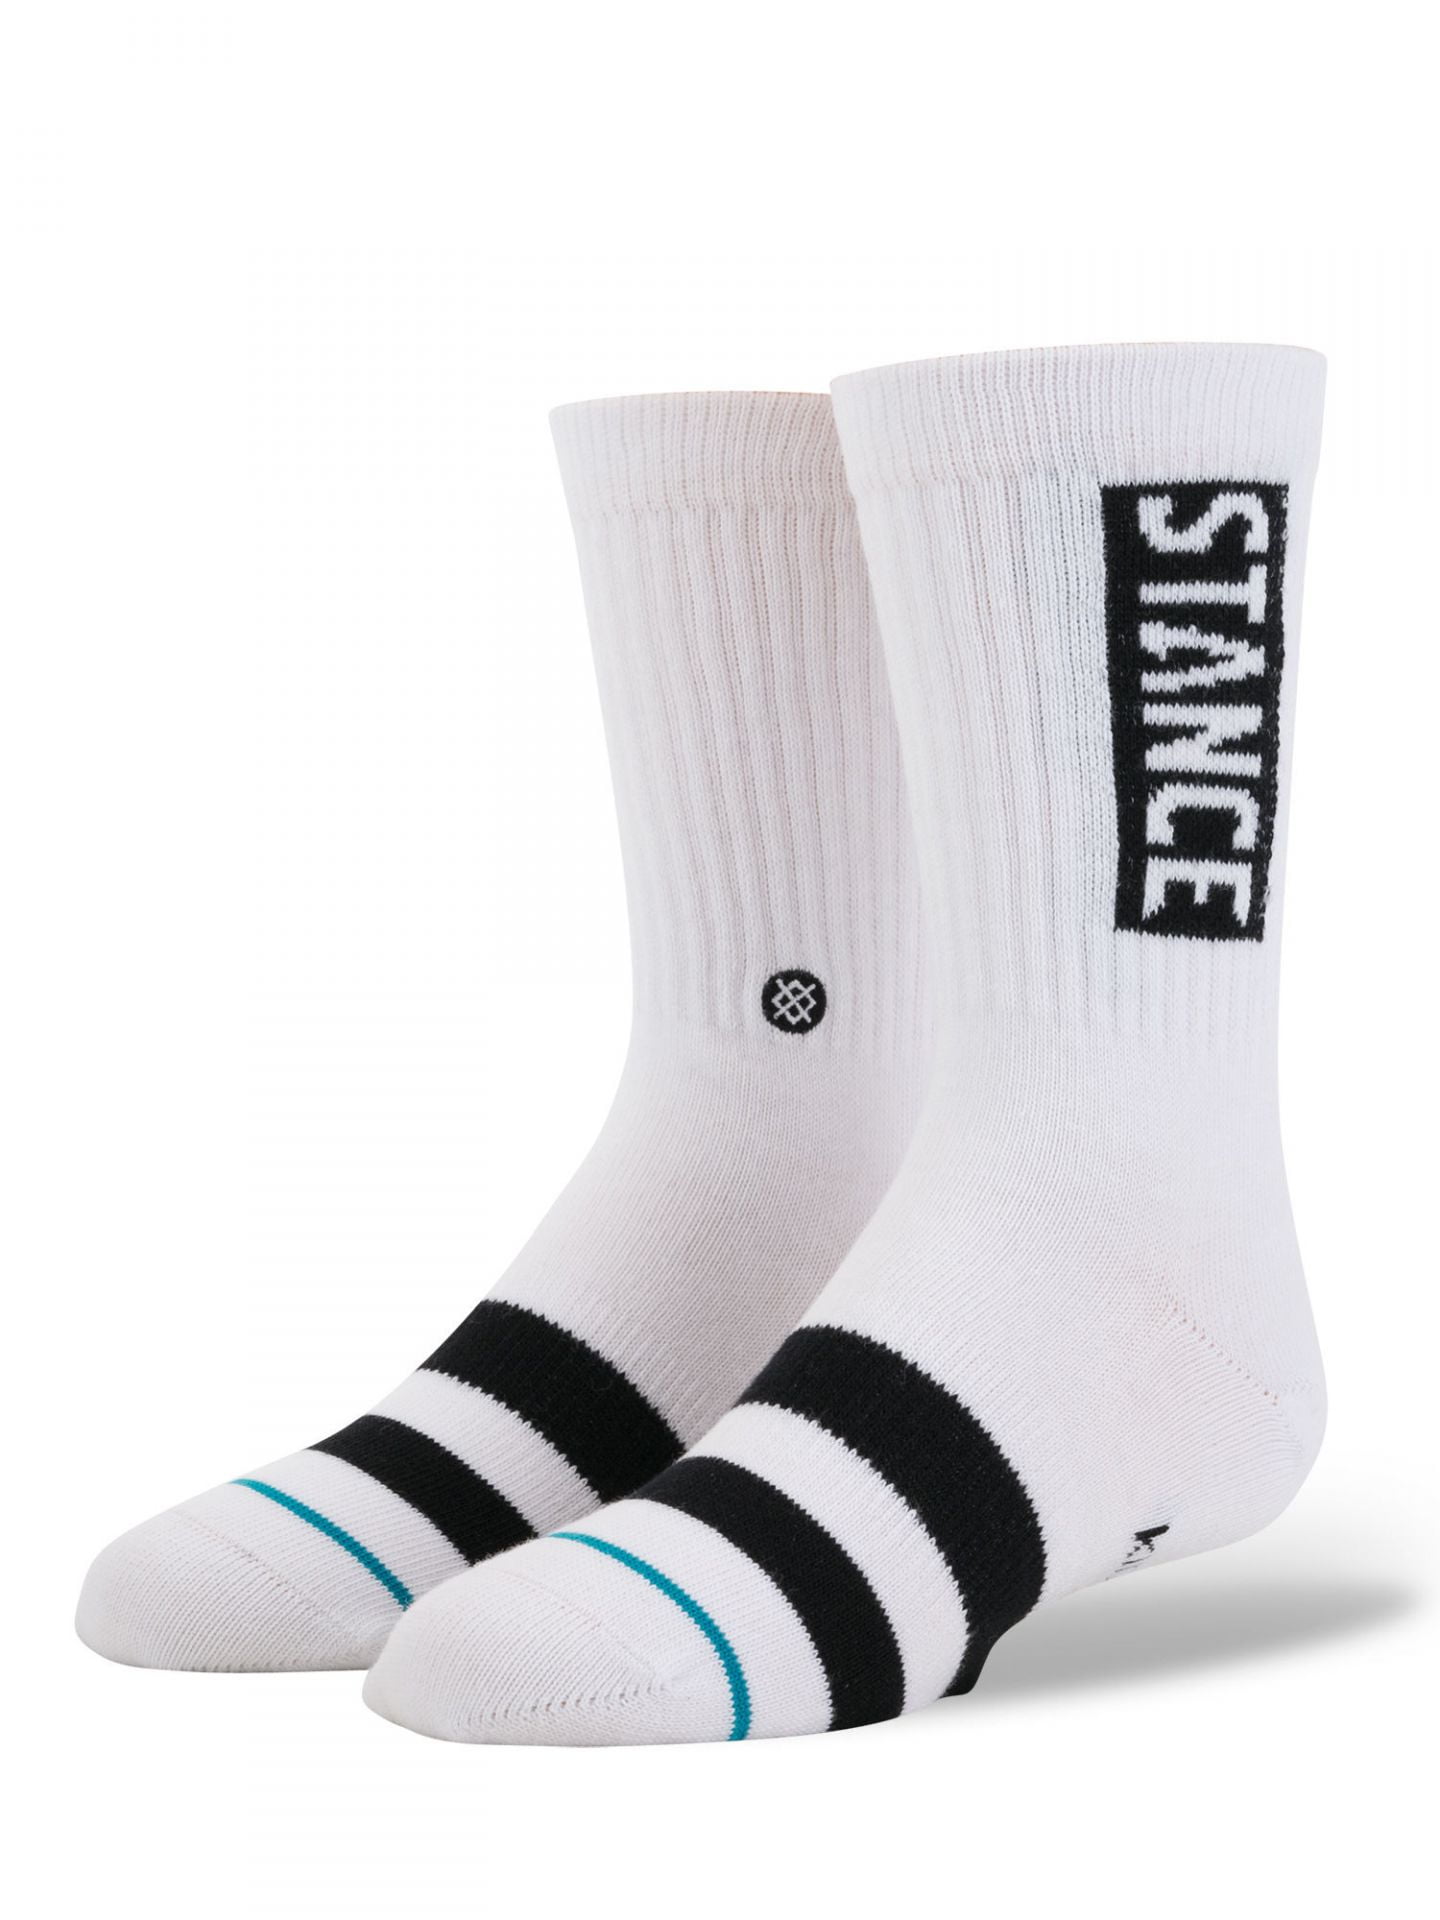 Stance - Stance Boys' OG Kids Crew Socks, White, Medium - Walmart.com ...